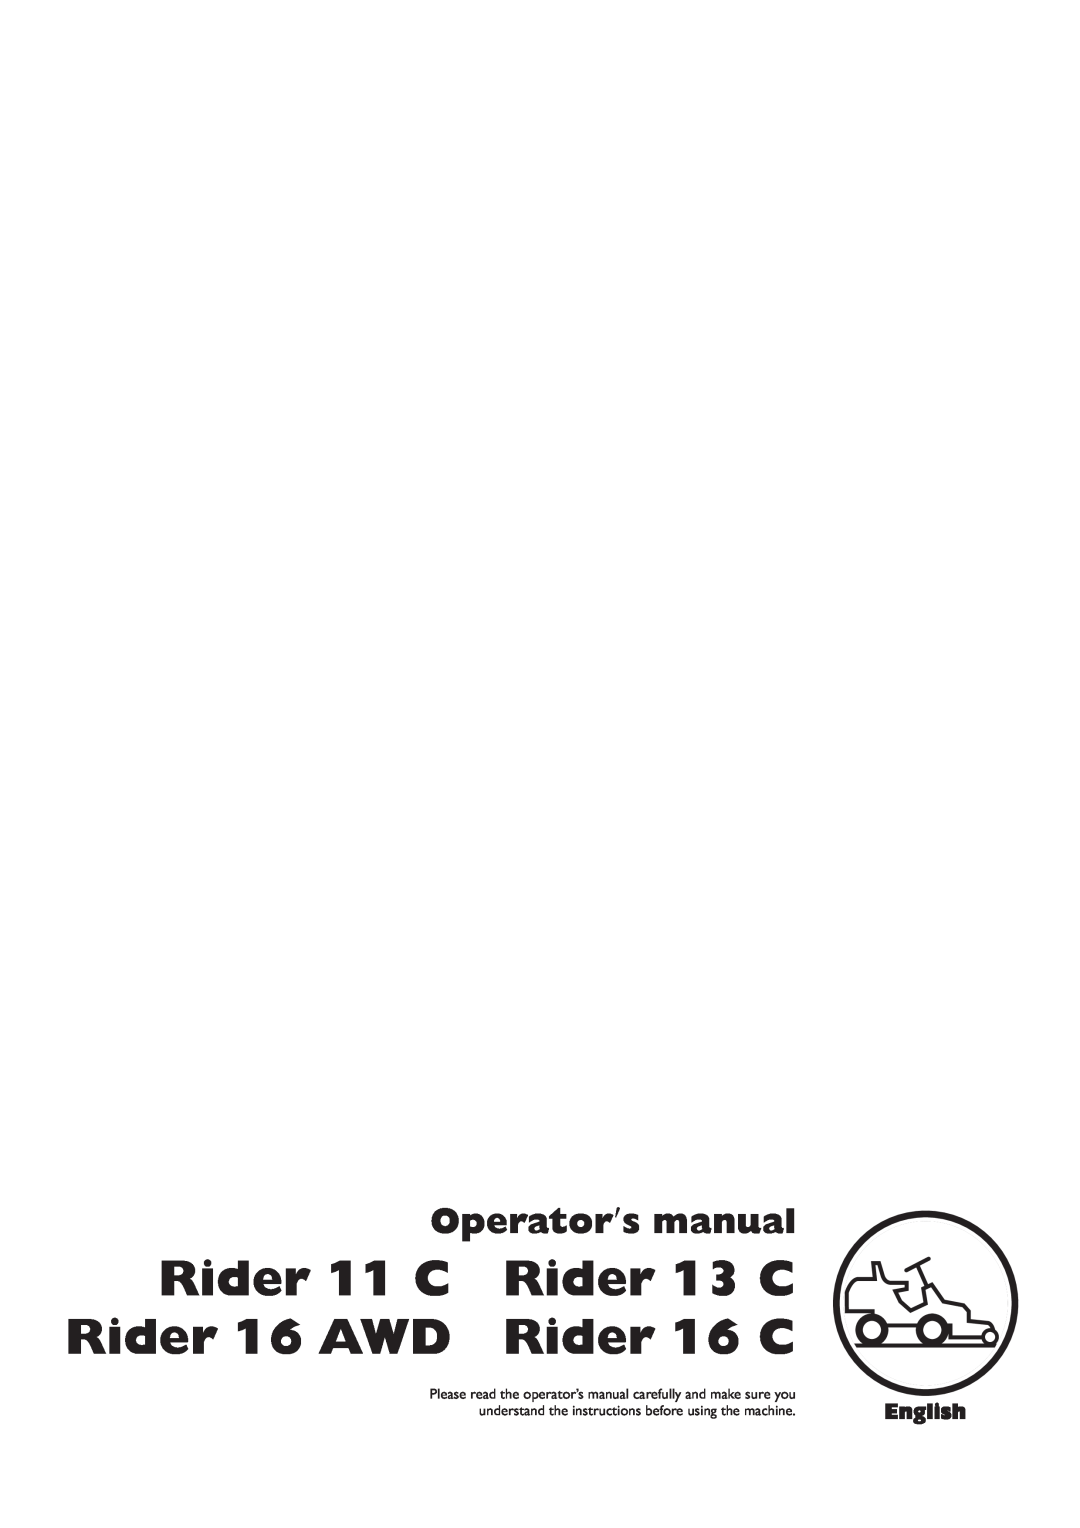 Husqvarna manual Rider 11 C, Rider 13 C, Rider 16 AWD, Rider 16 C, Operator′s manual, English 